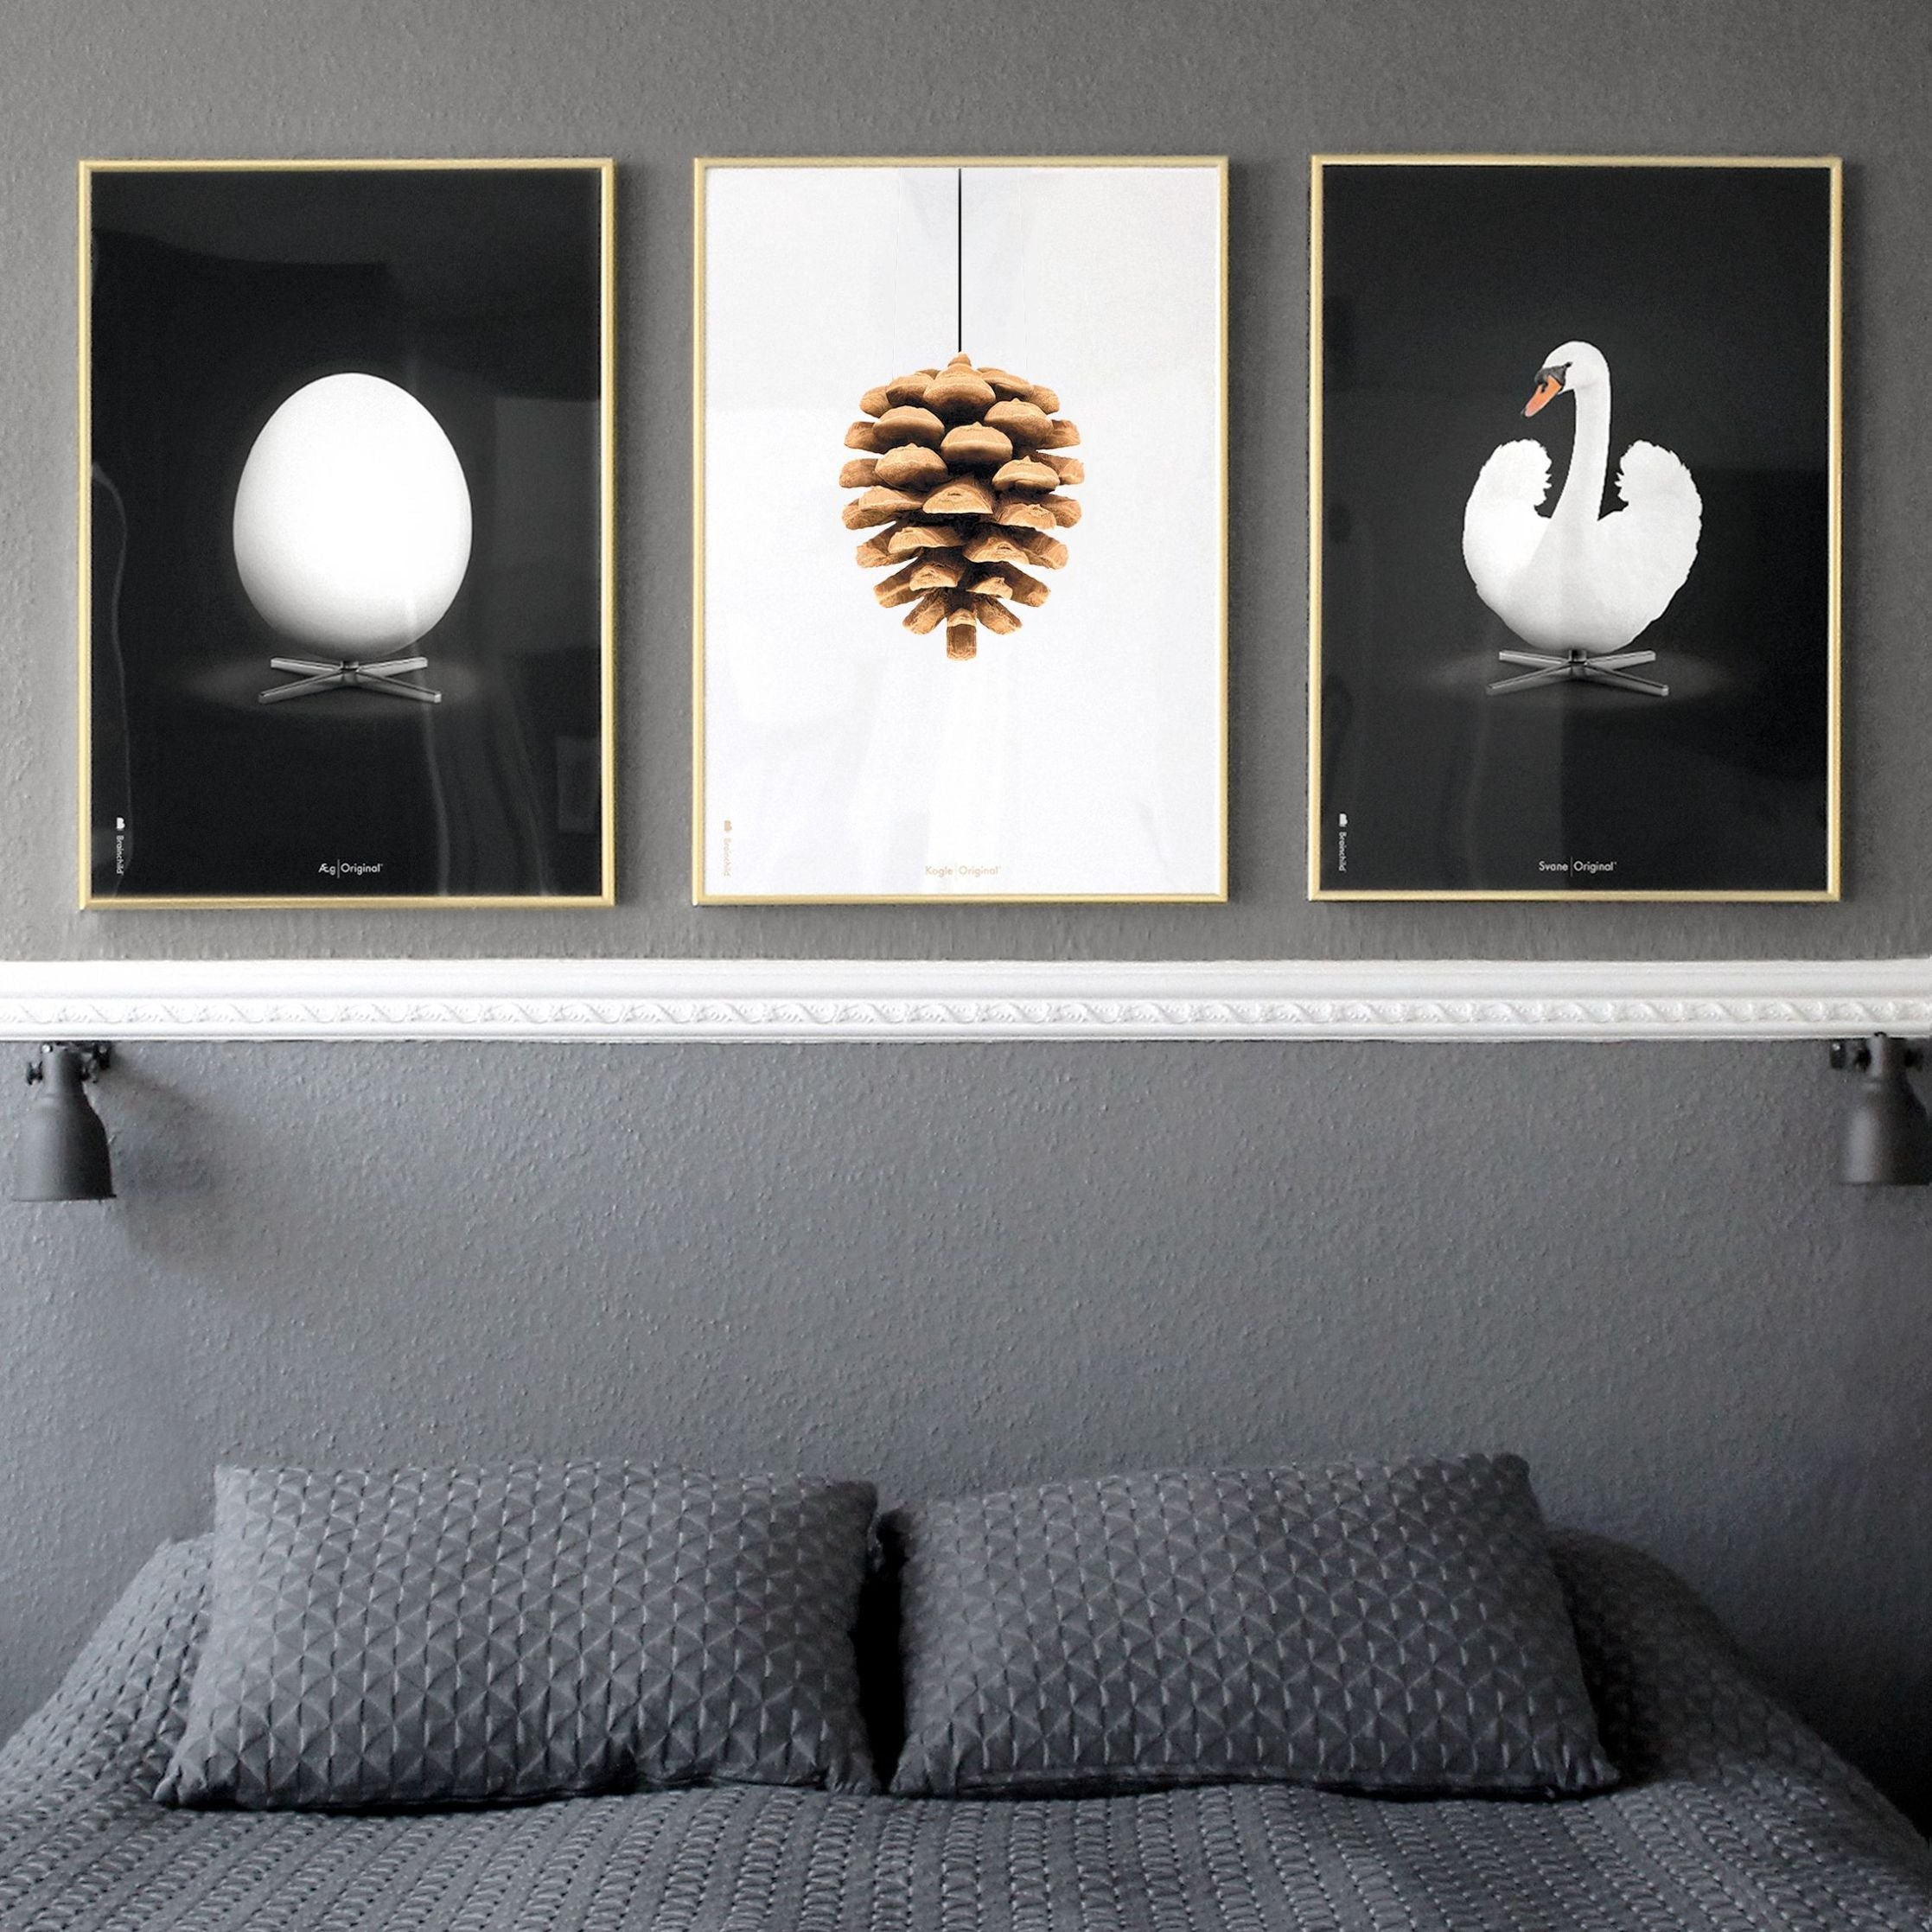 Klasický plakát s labutí mozek, rám vyrobený z lehkého dřeva 30x40 cm, bílé/bílé pozadí